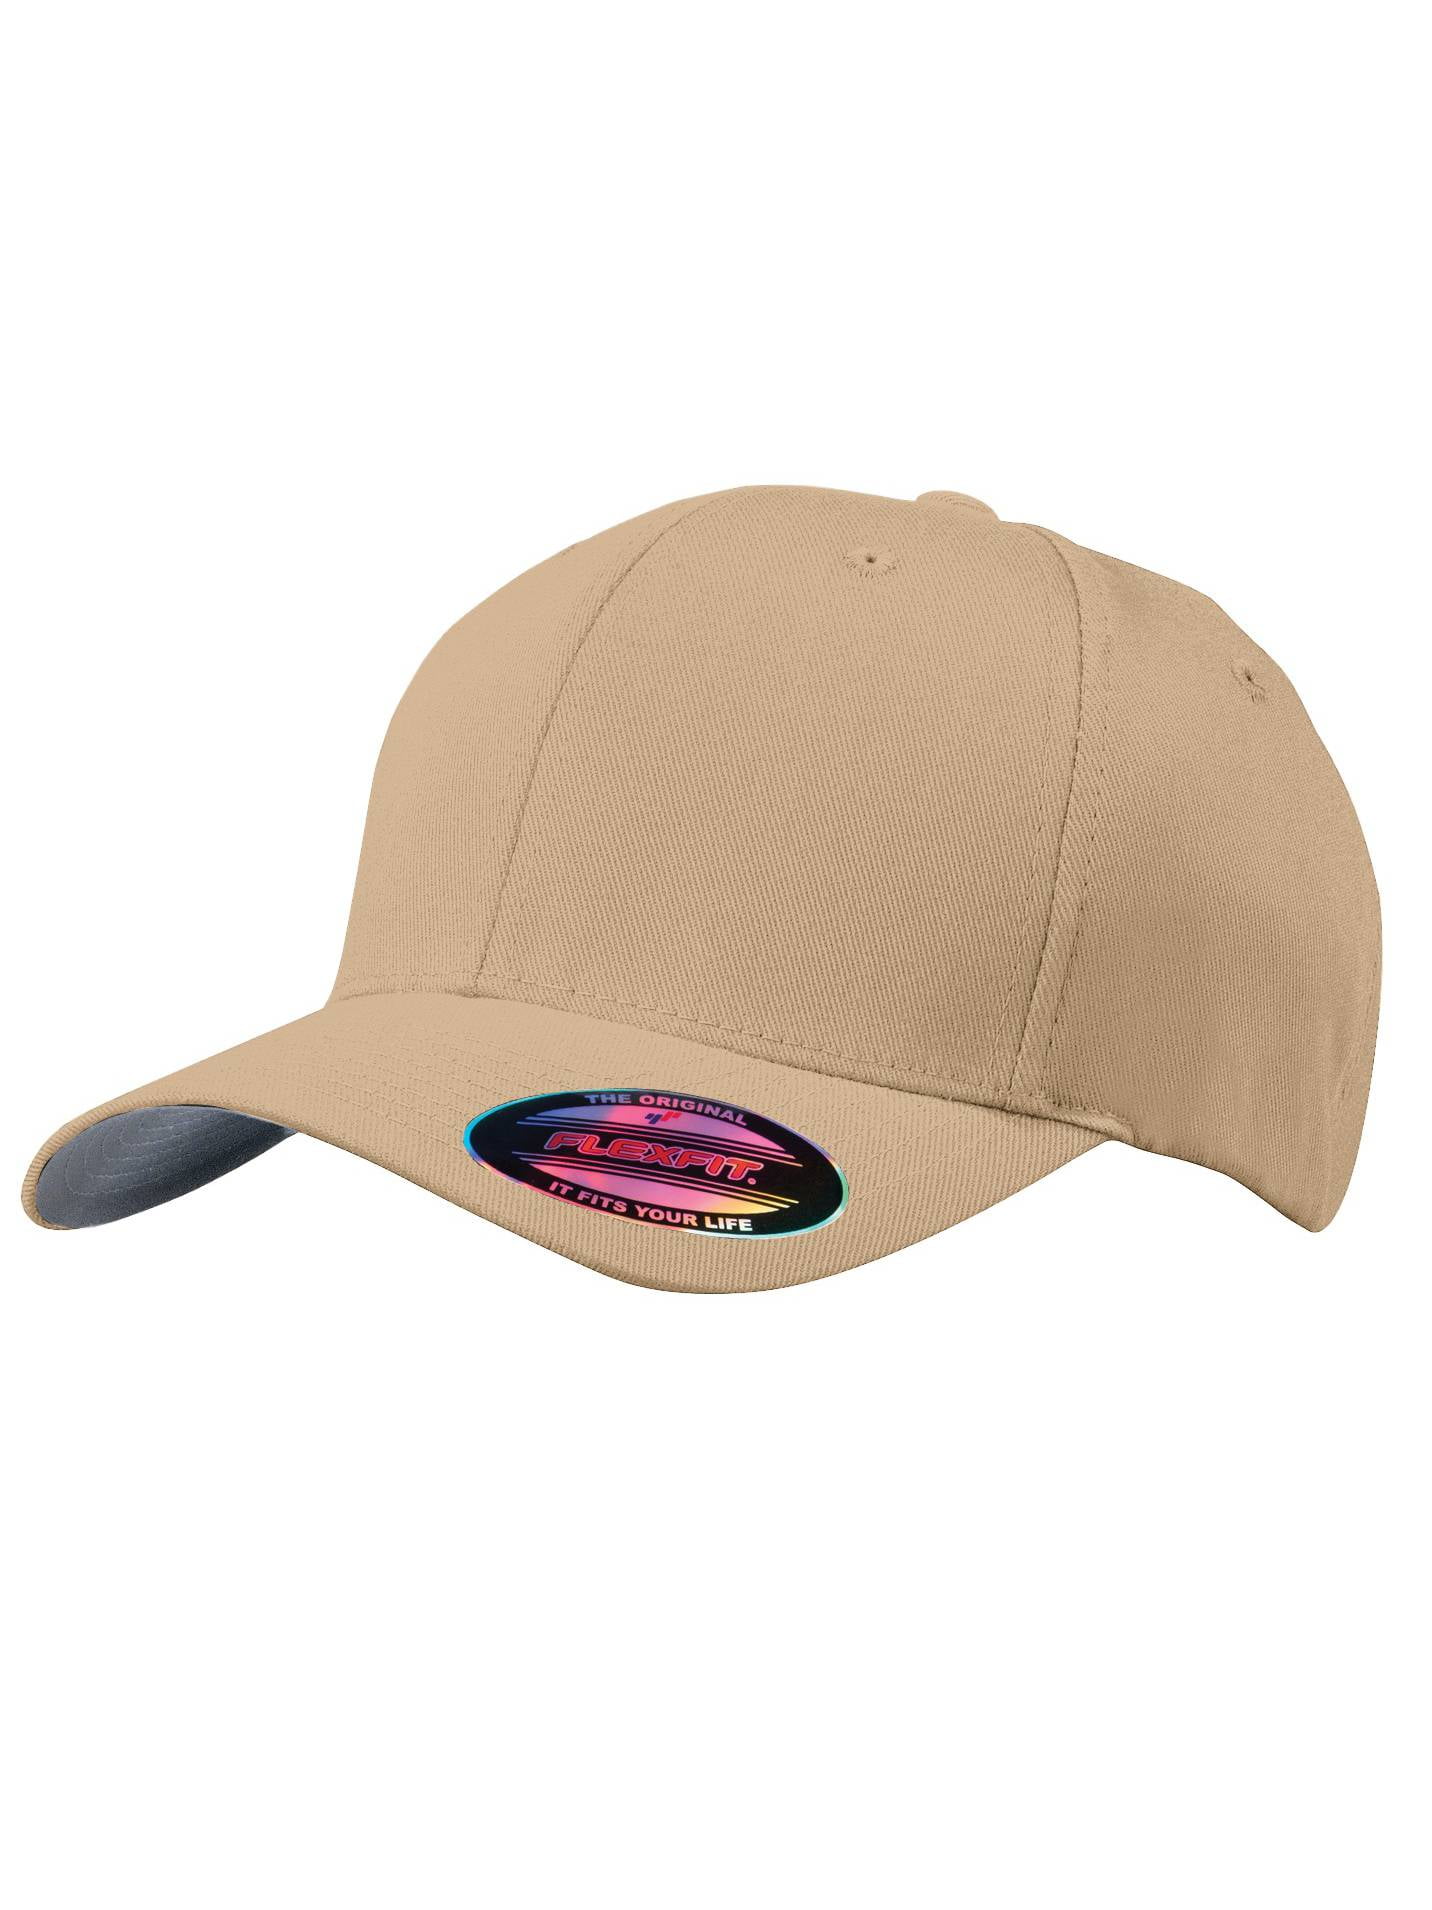 Small/Medium Baseball Flex Cap Fit - - Drab/Green Top Headwear Olive